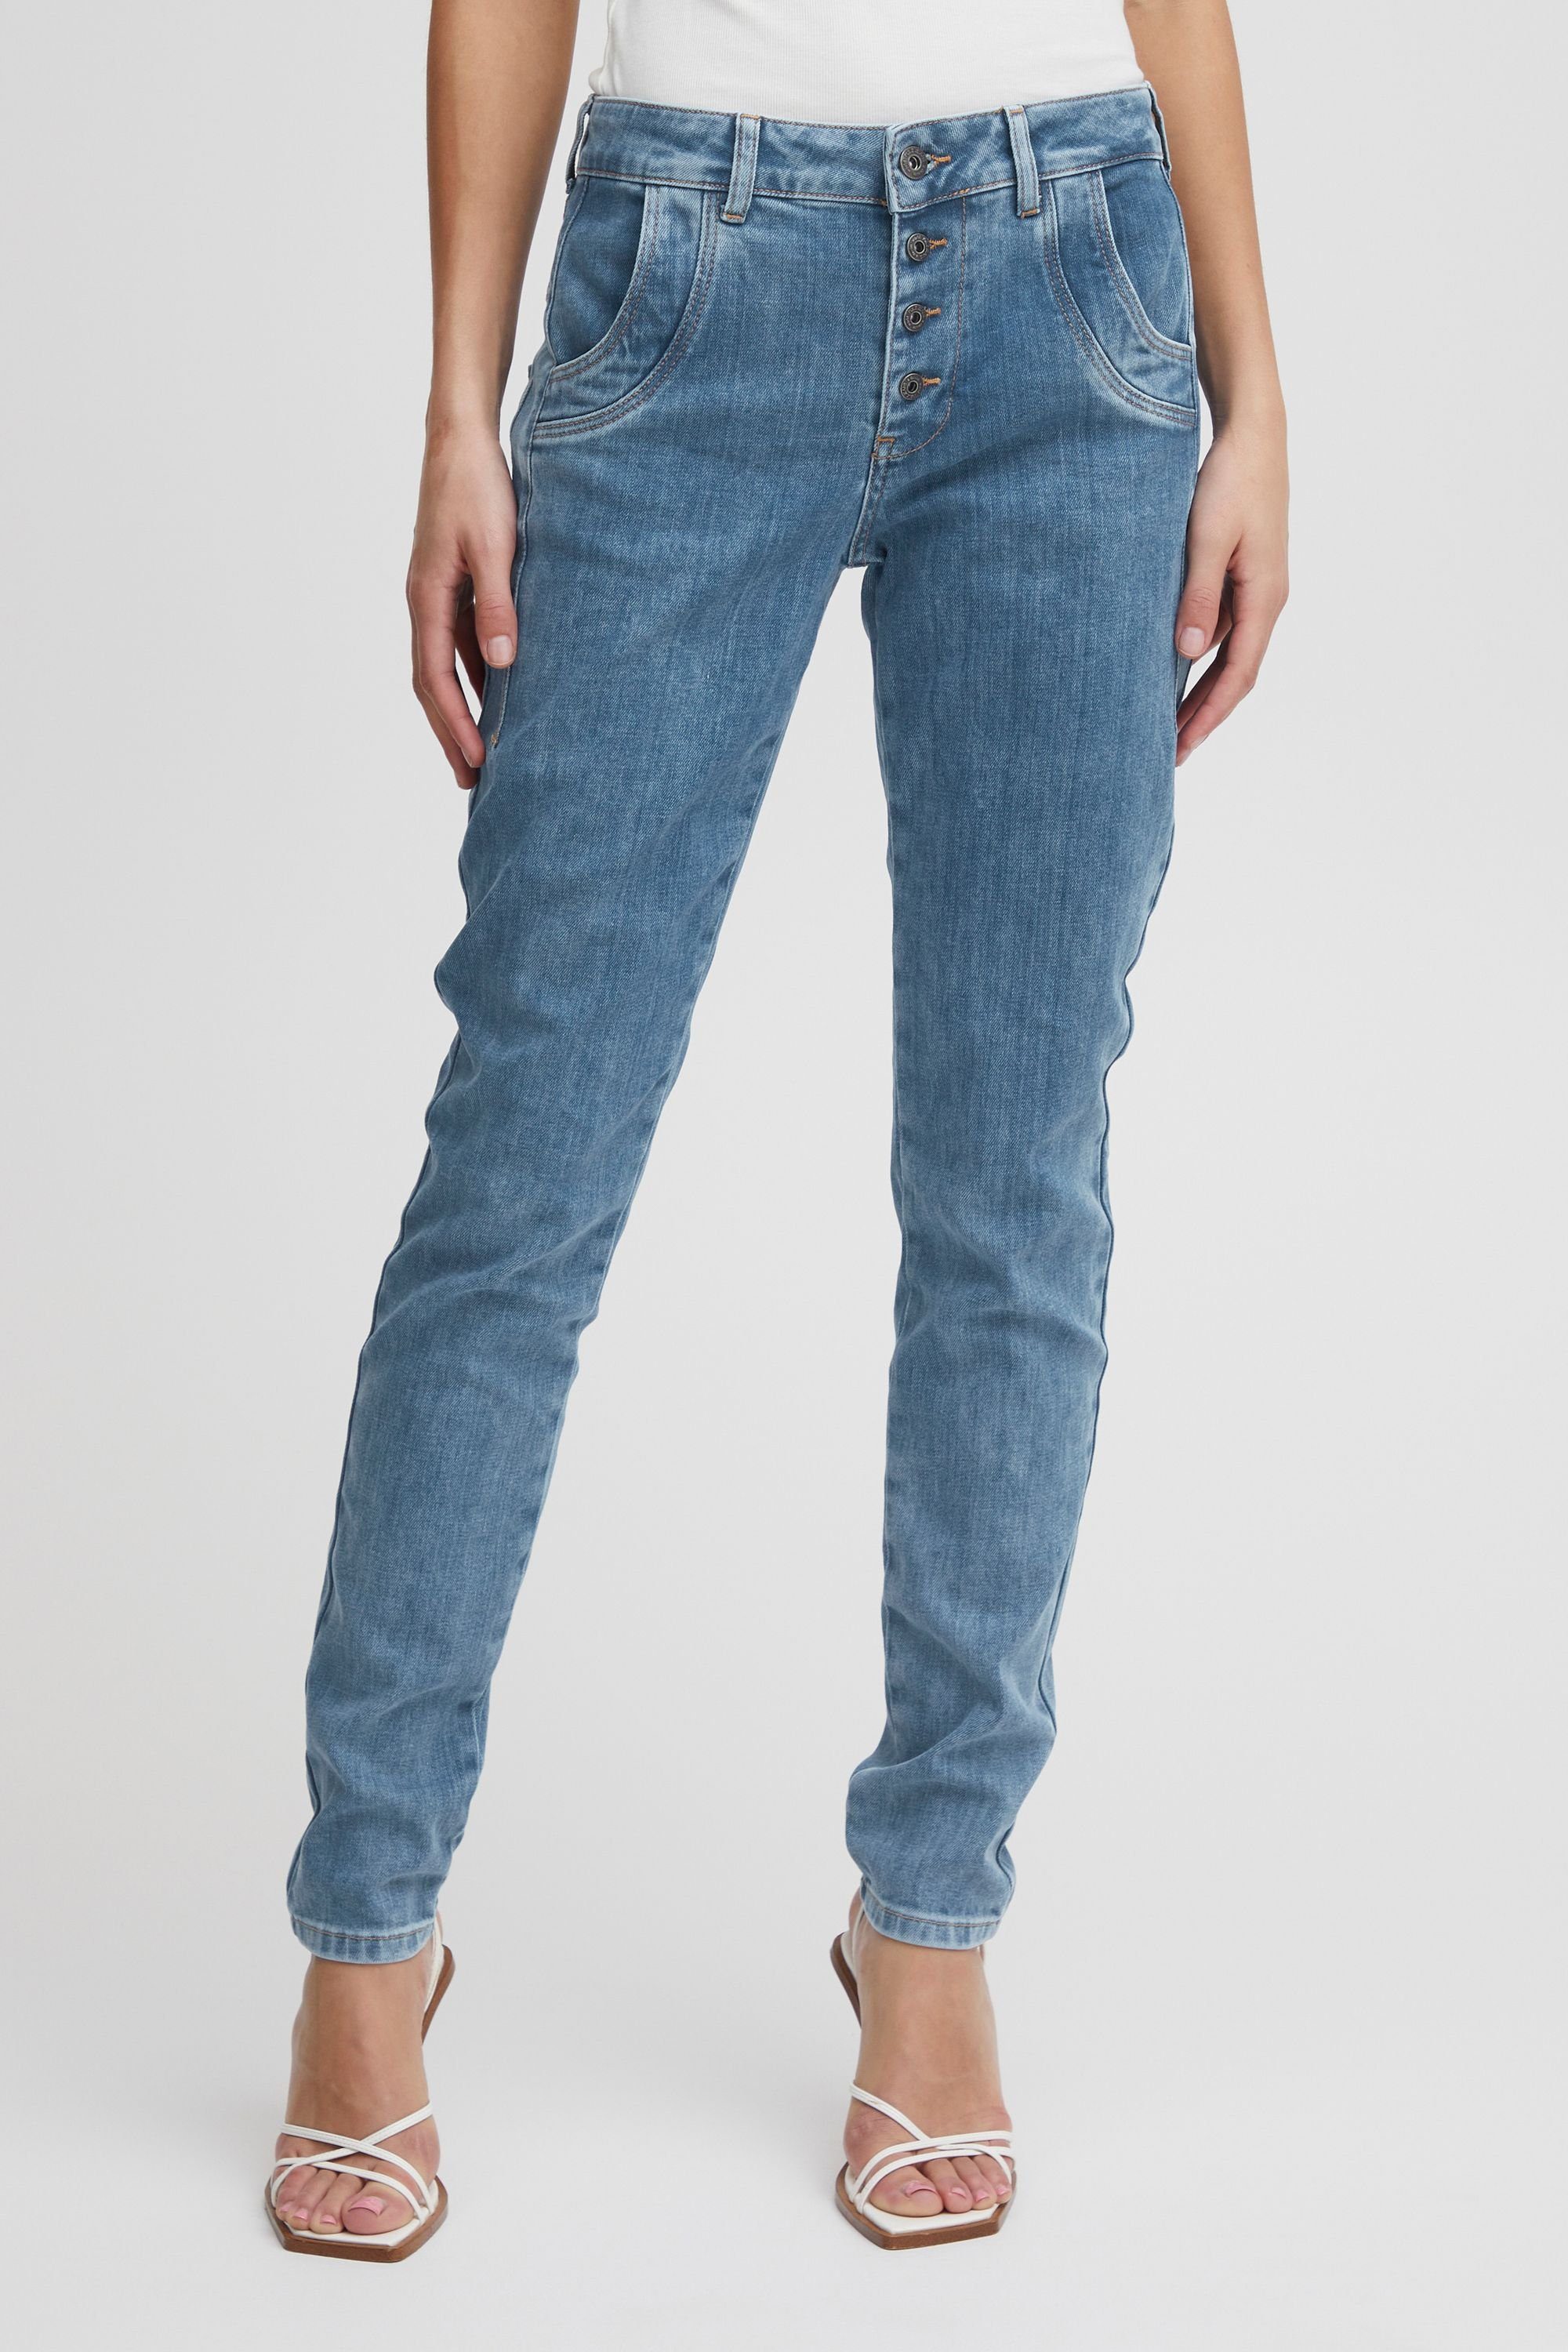 Pulz Jeans Light Loose Leg 5-Pocket-Jeans PZMELINA (200008) Blue Jeans Denim Skinny